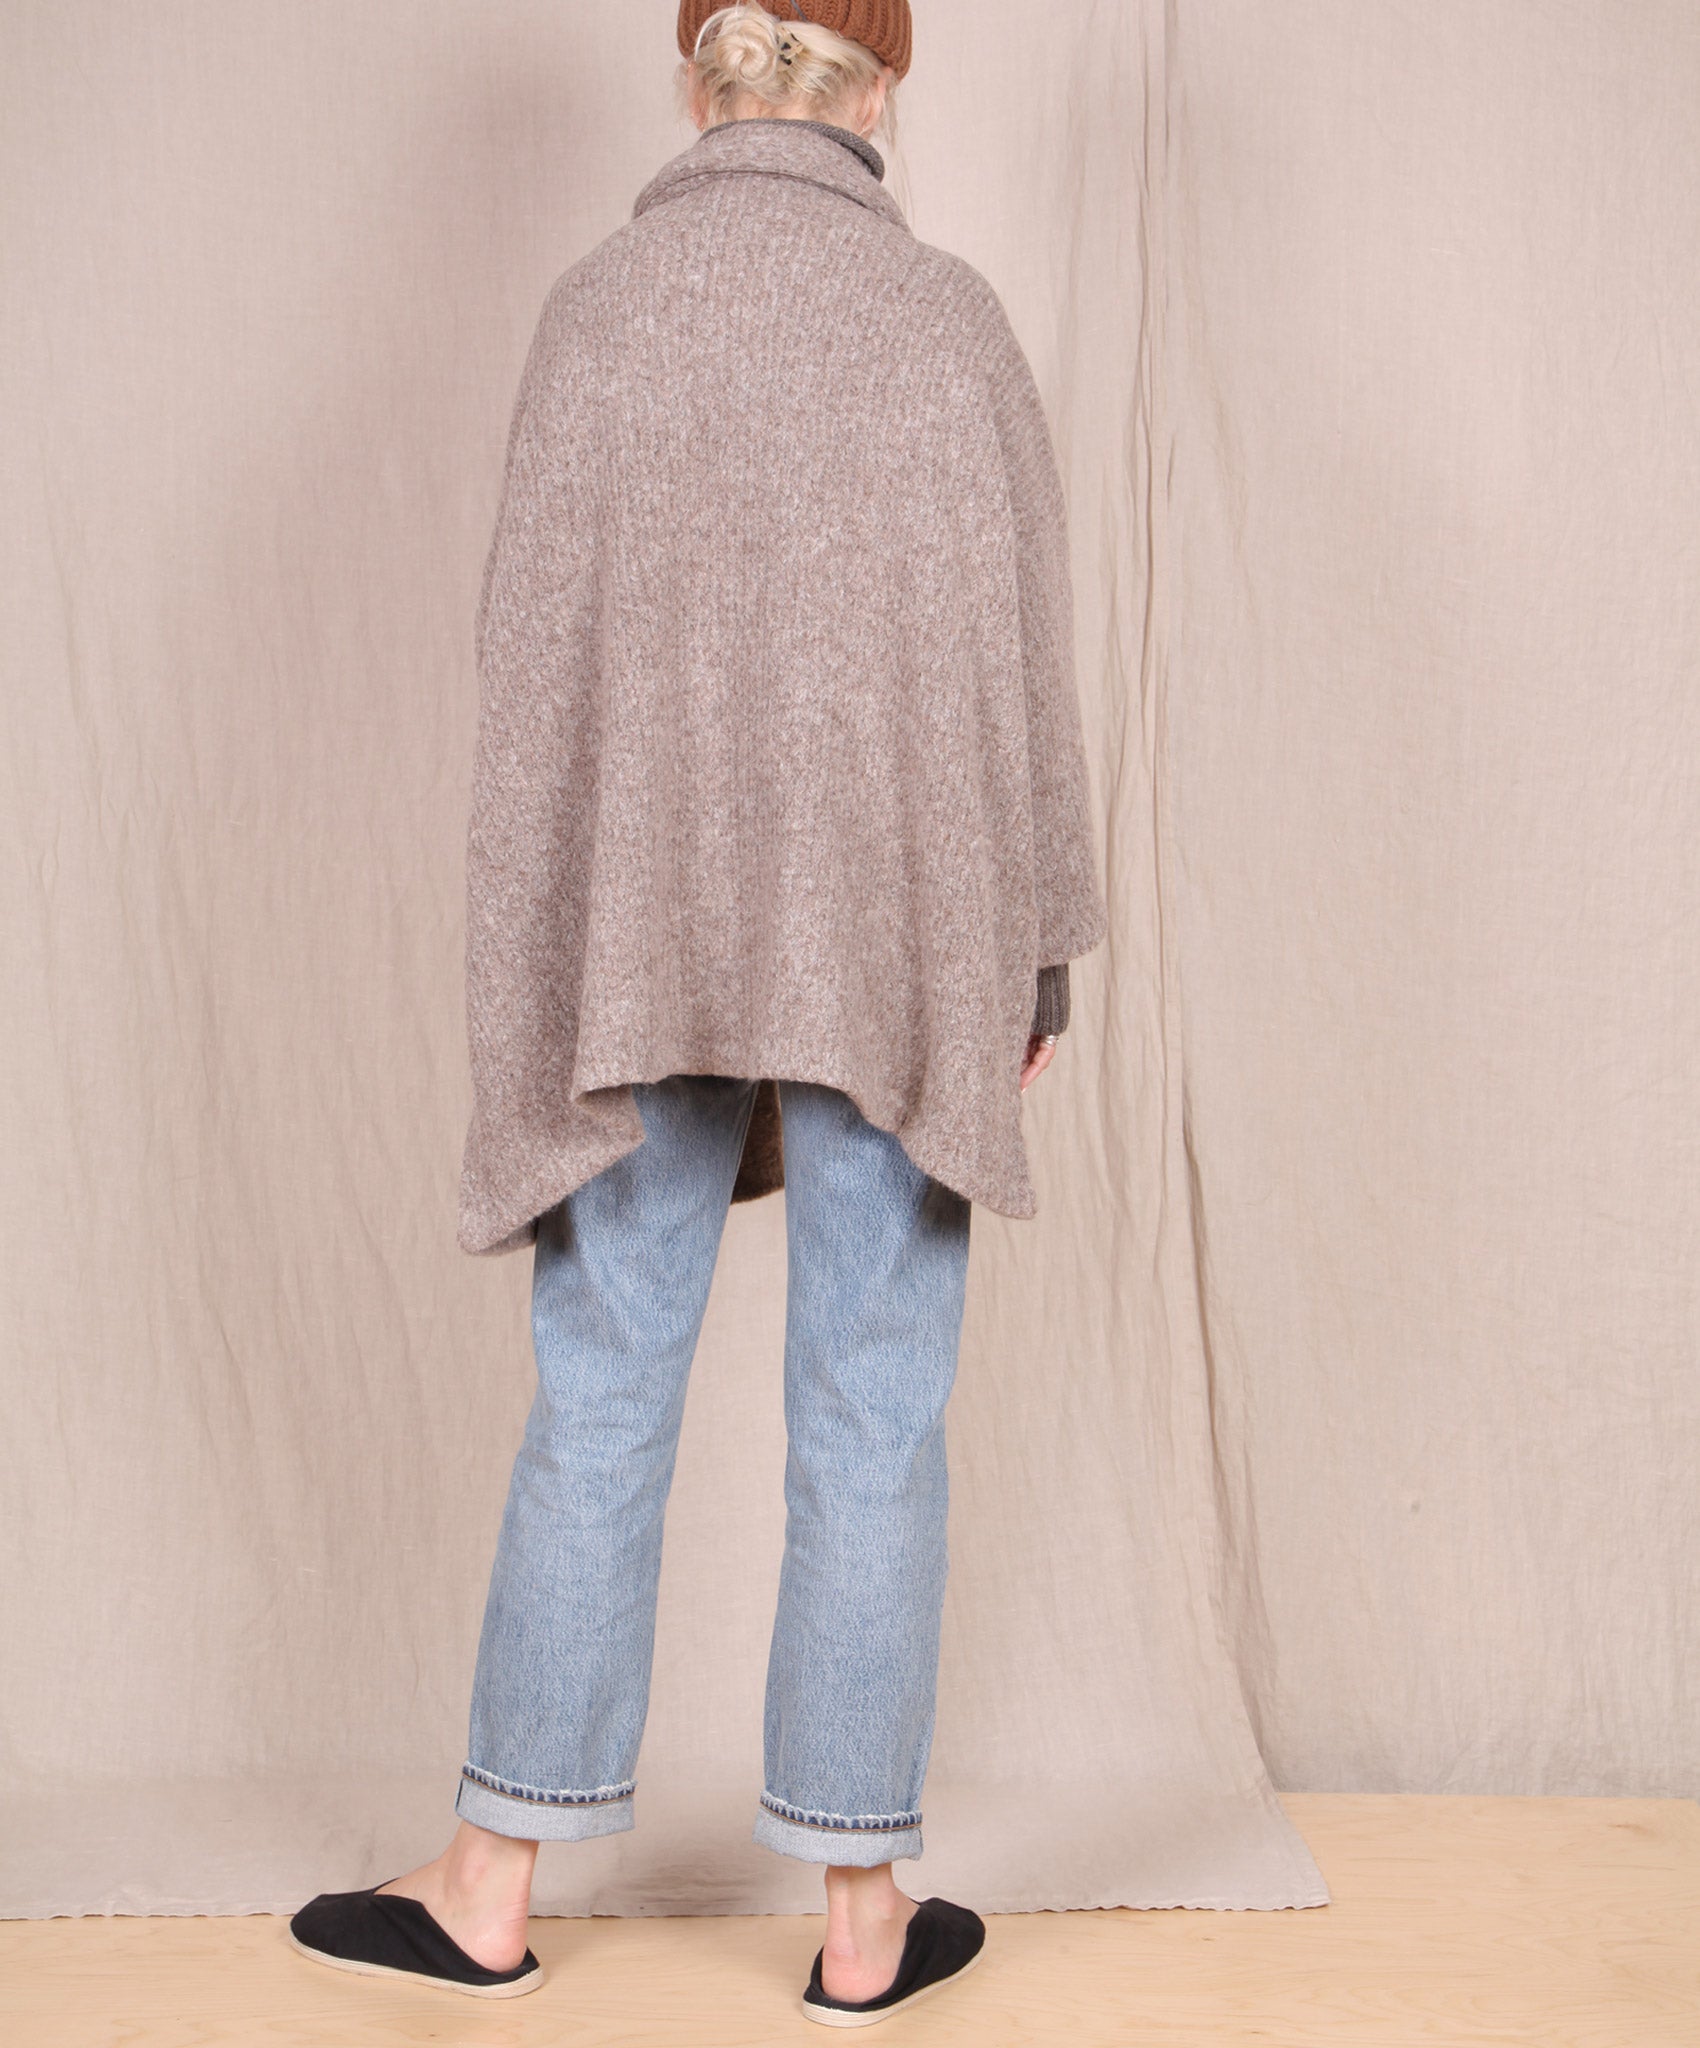 Atelier Delphine-Haori Sweater Coat // Deer